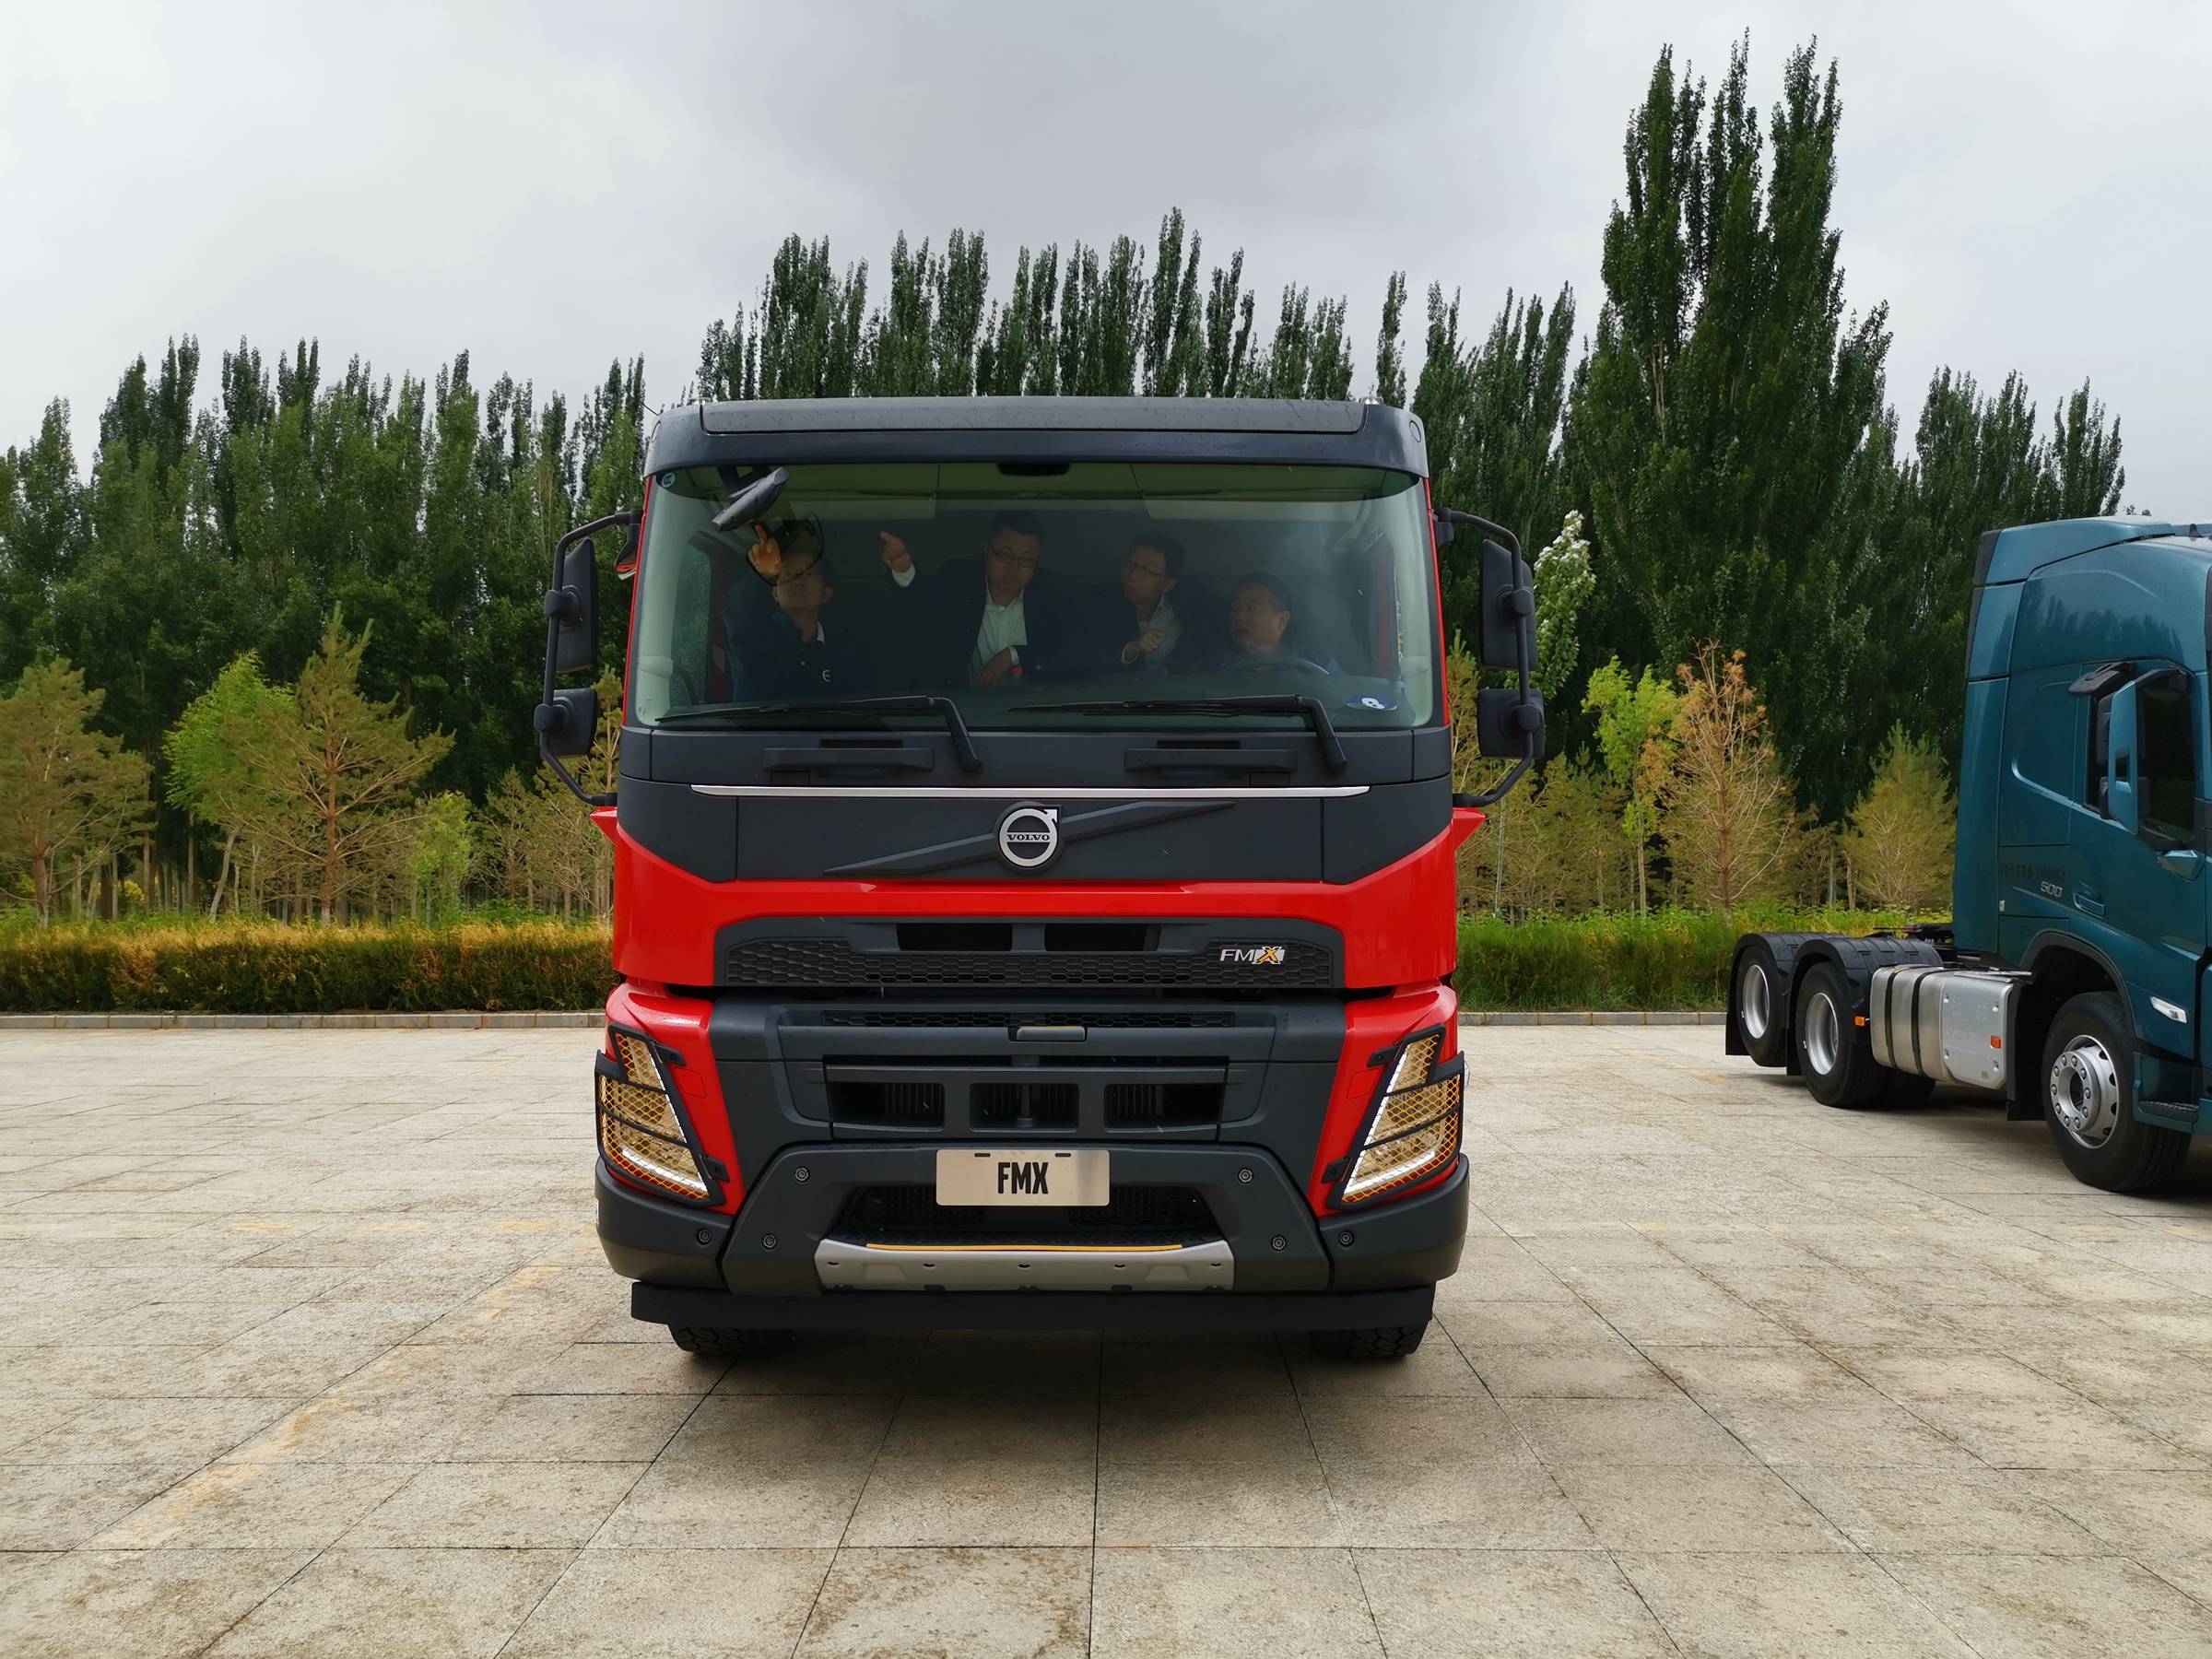 fh/fm/fmx三大系列齐发,全新一代沃尔沃卡车新品正式上市